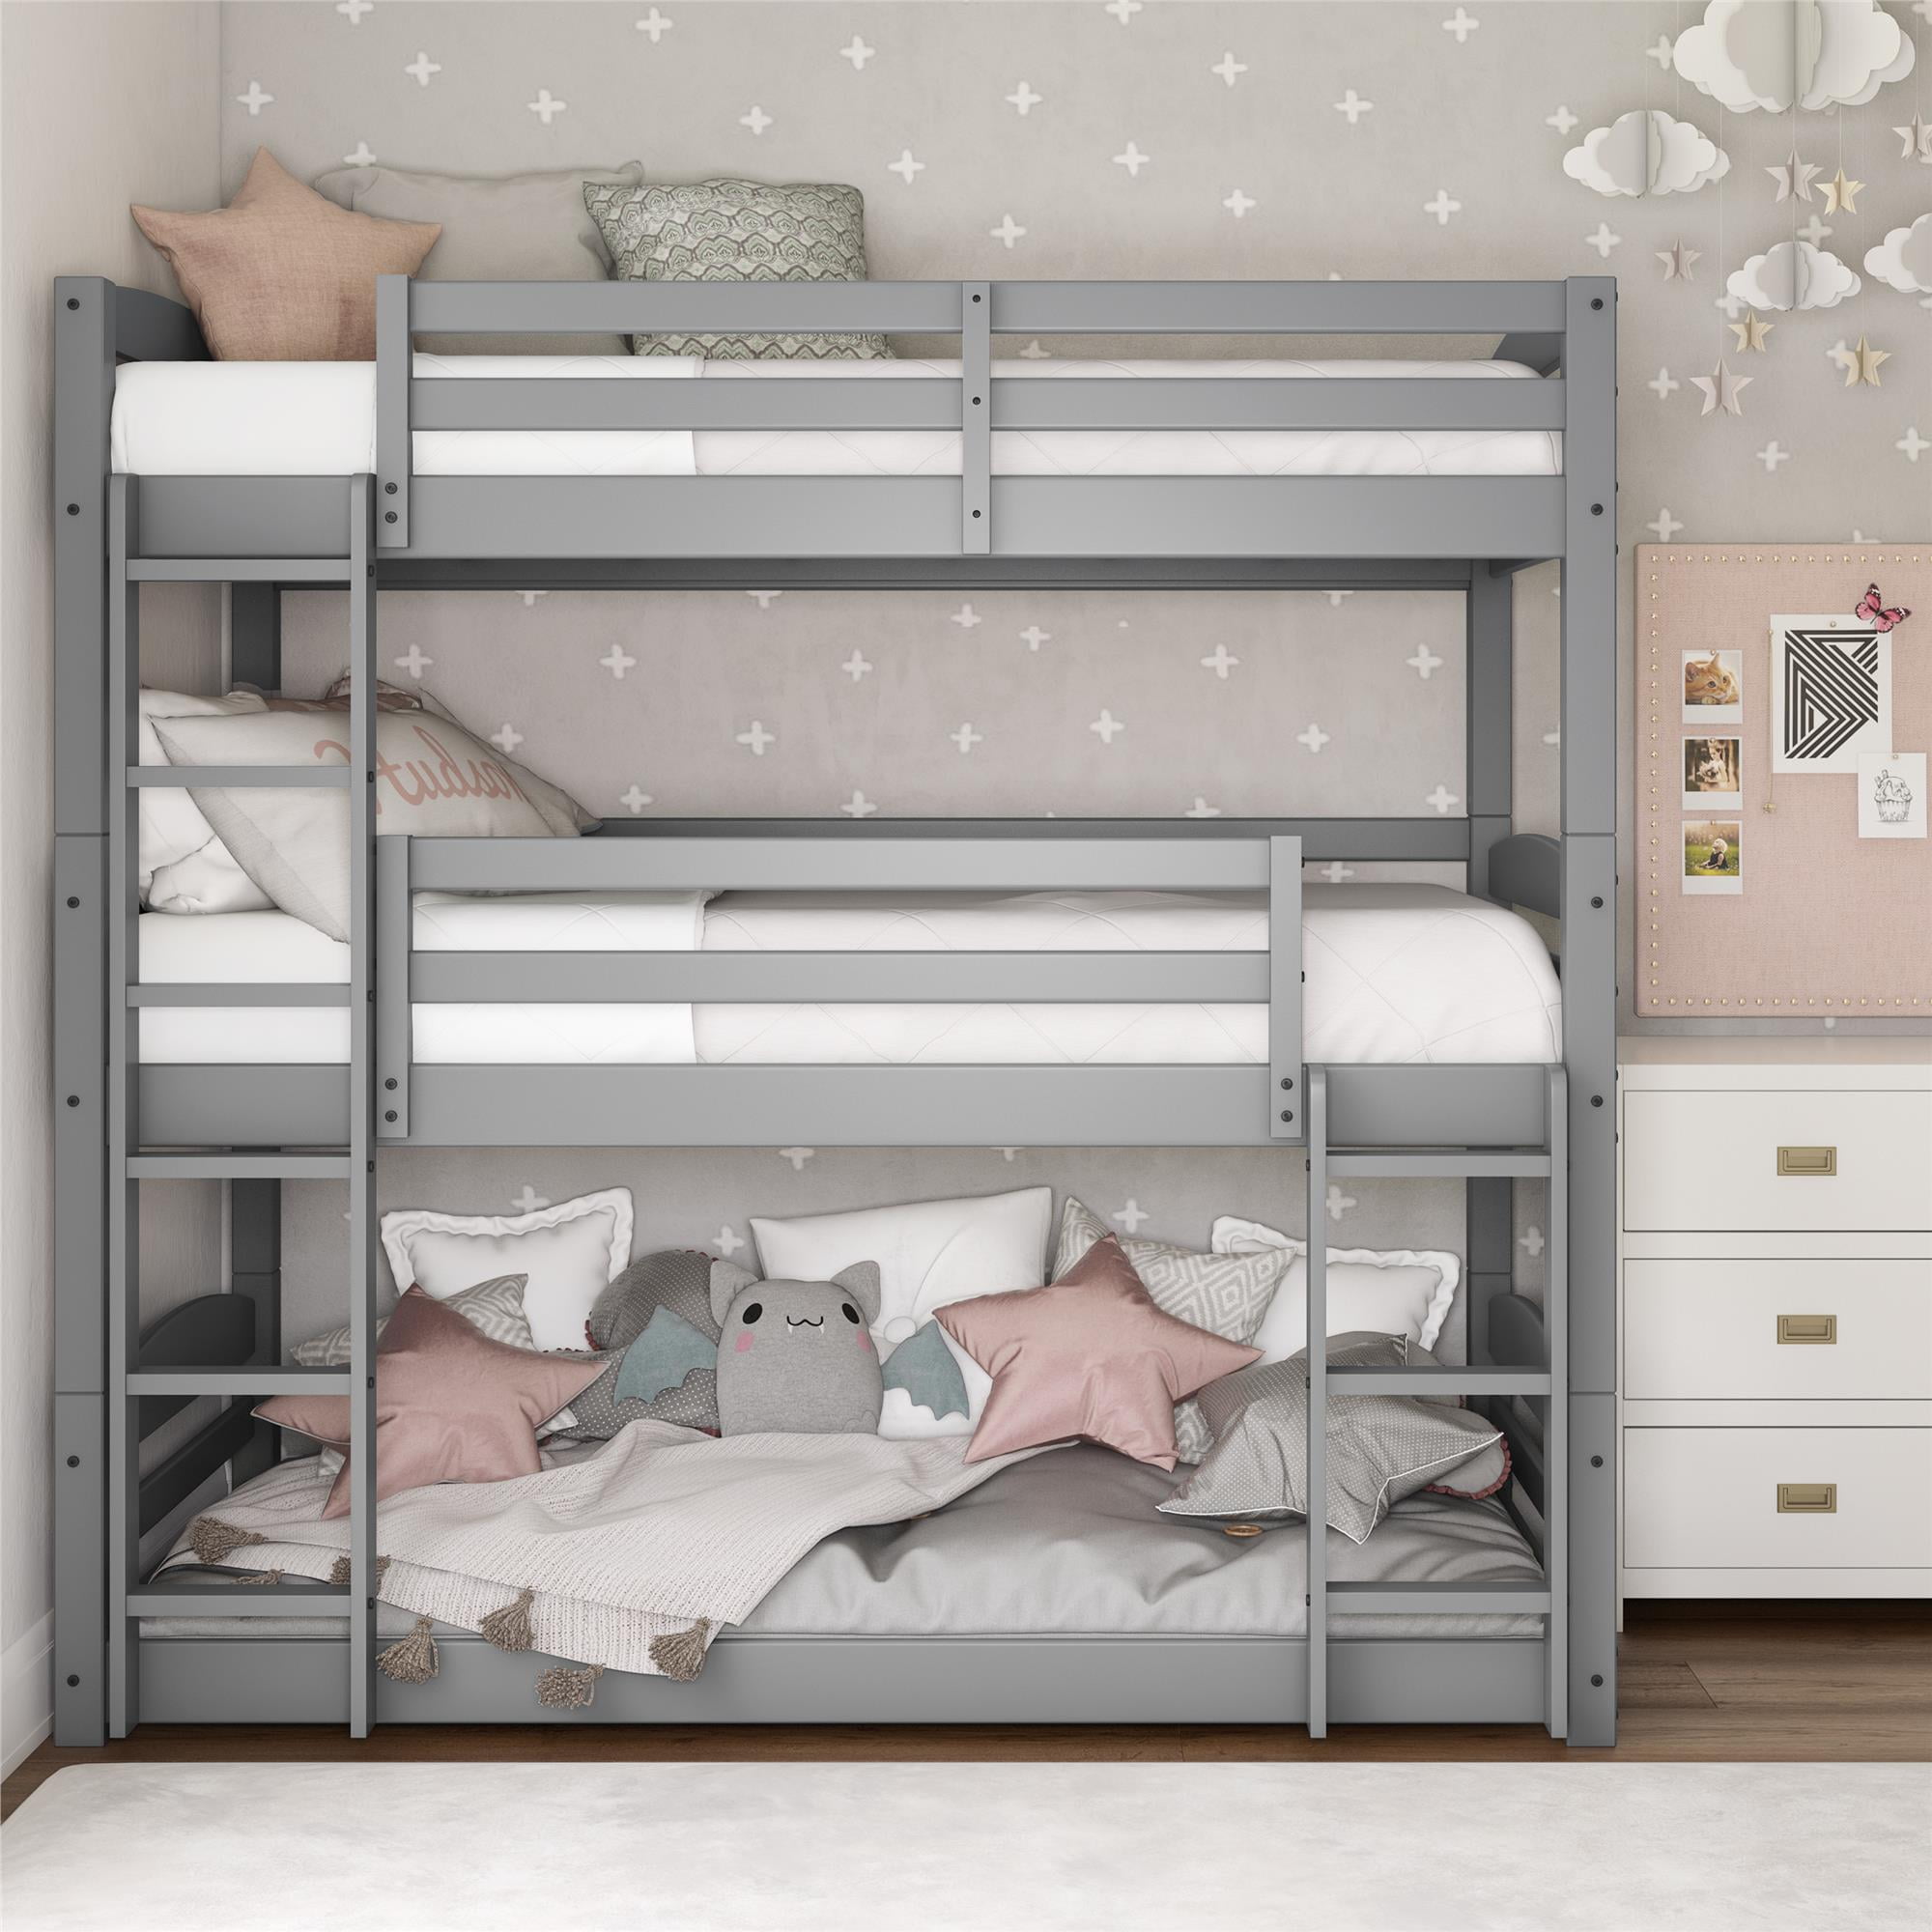 gray bunk beds